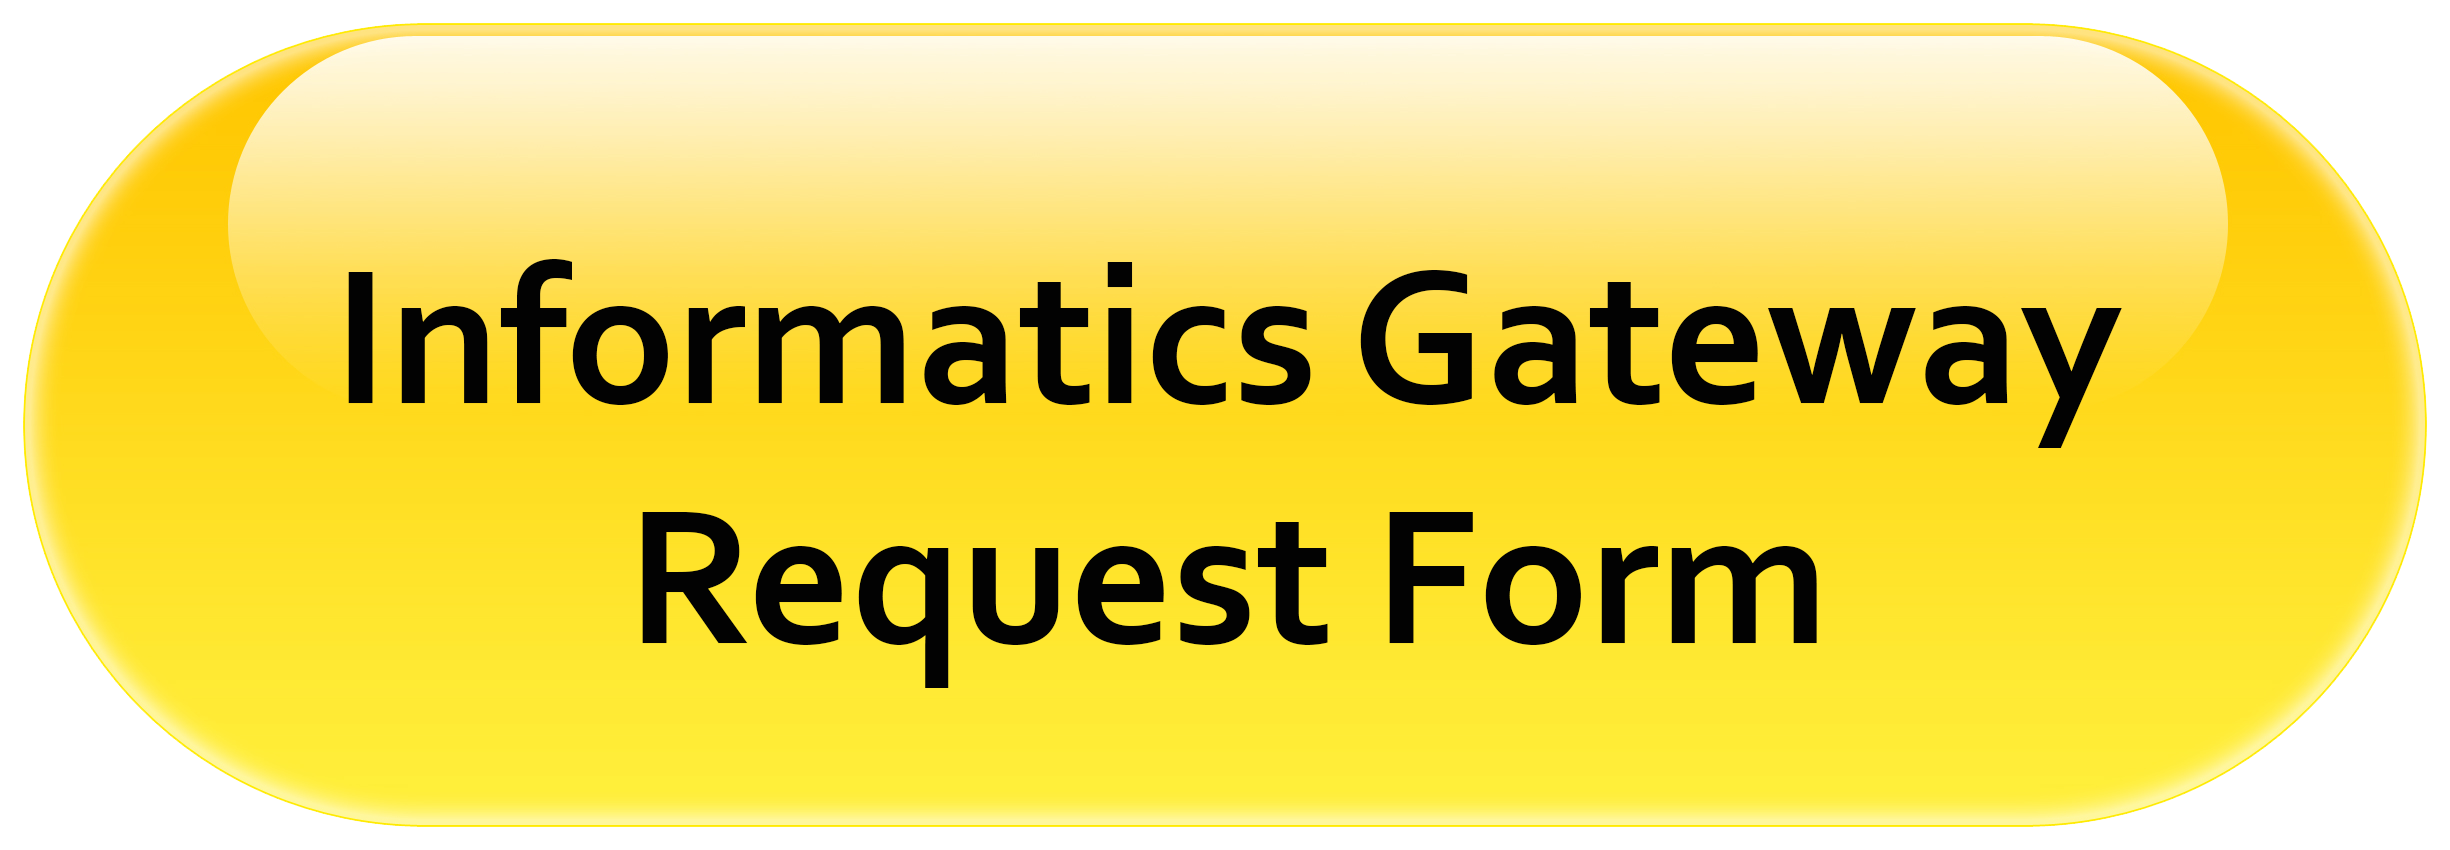 Informatics Gateway Request Form Button